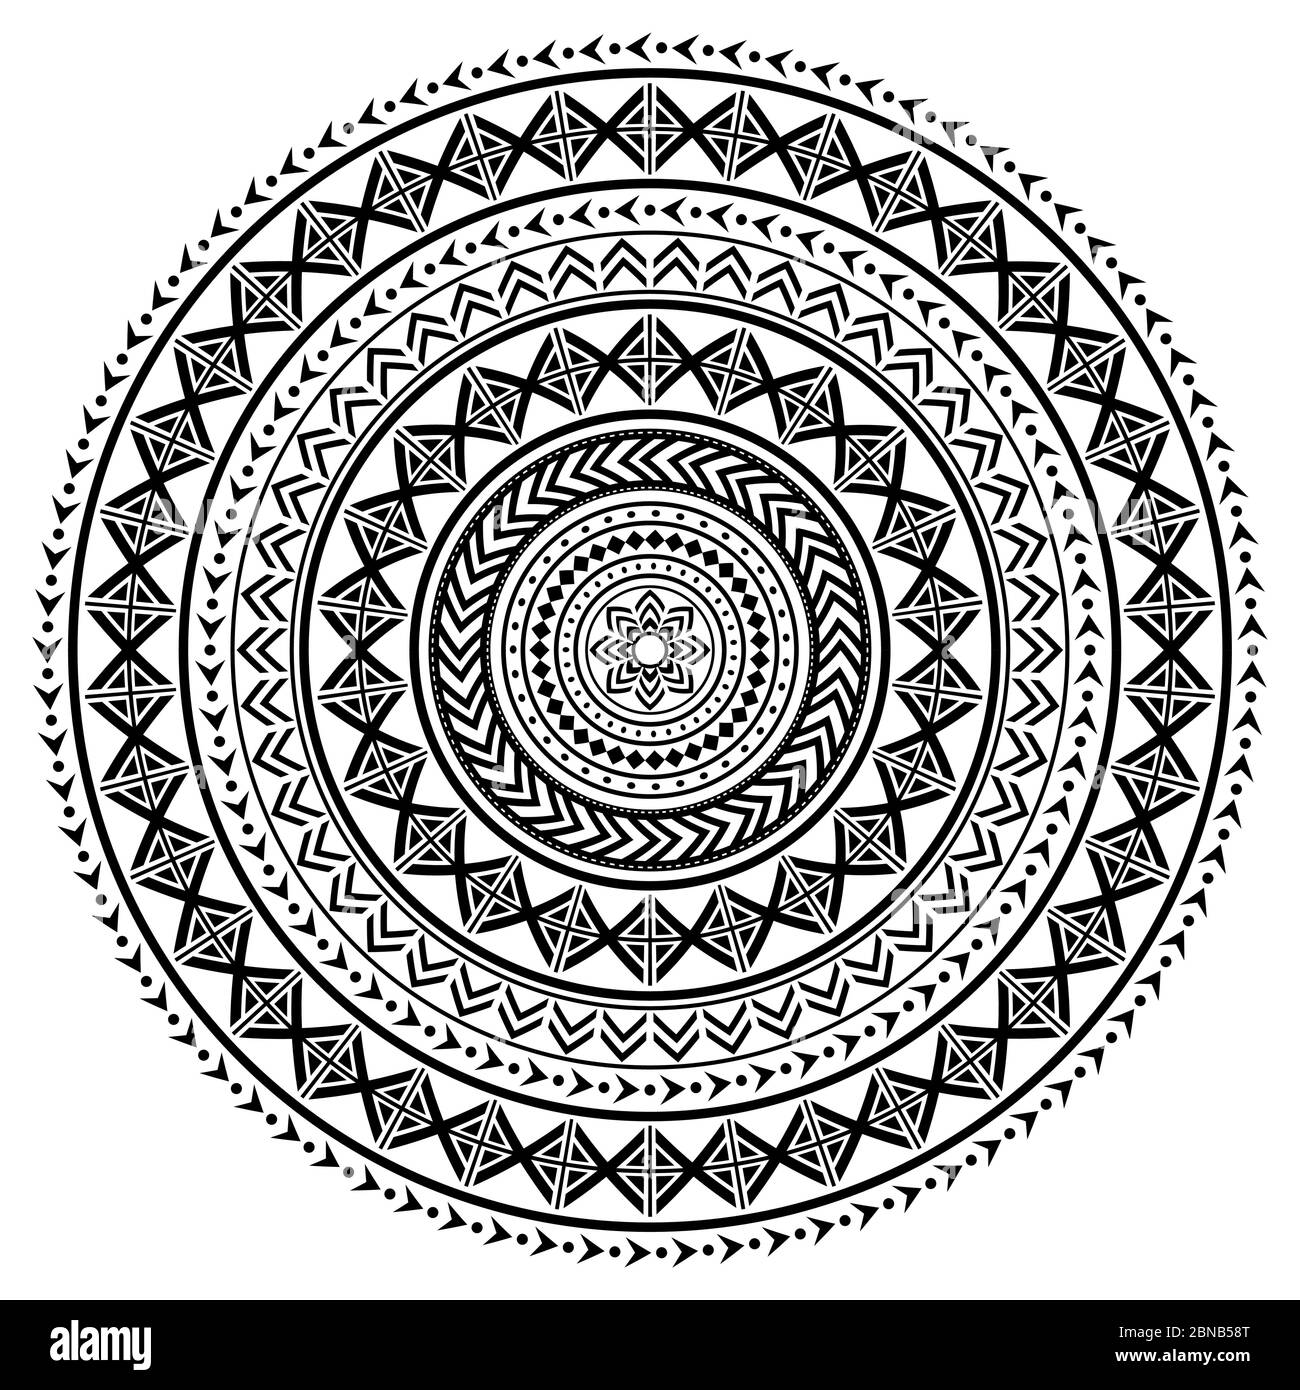 Motif vectoriel de mandala de style tatouage polynésien, motif tribal hawaïen inspiré de l'art géométrique traditionnel Illustration de Vecteur